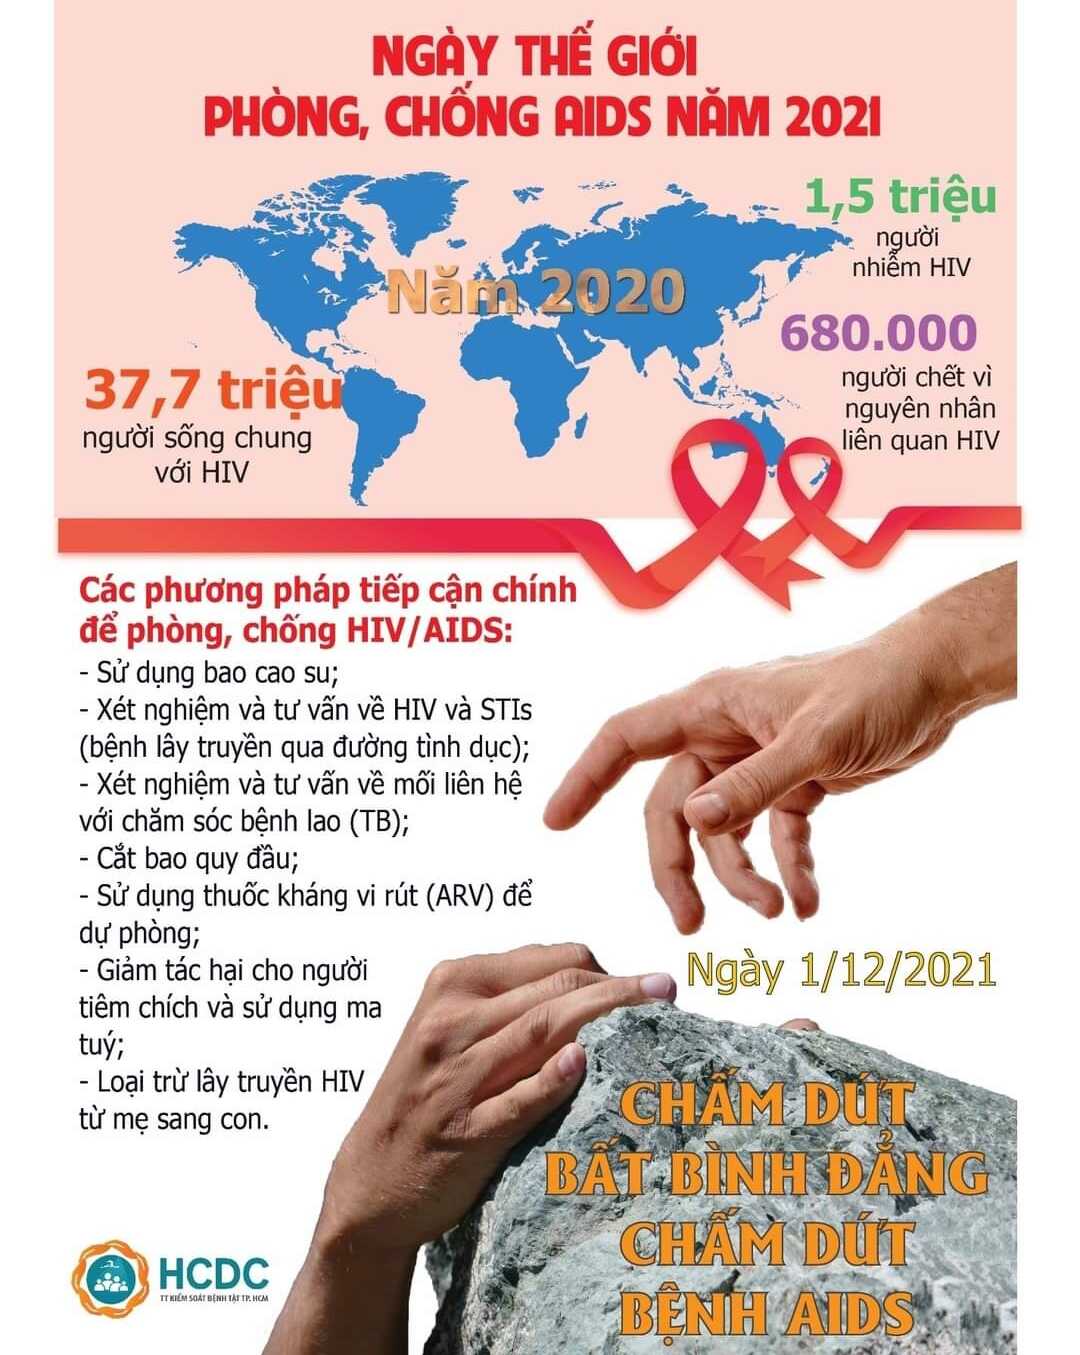 [NGÀY THẾ GIỚI PHÒNG, CHỐNG AIDS NĂM 2021: “CHẤM DỨT BẤT BÌNH ĐẲNG. CHẤM DỨT BỆNH AIDS”]